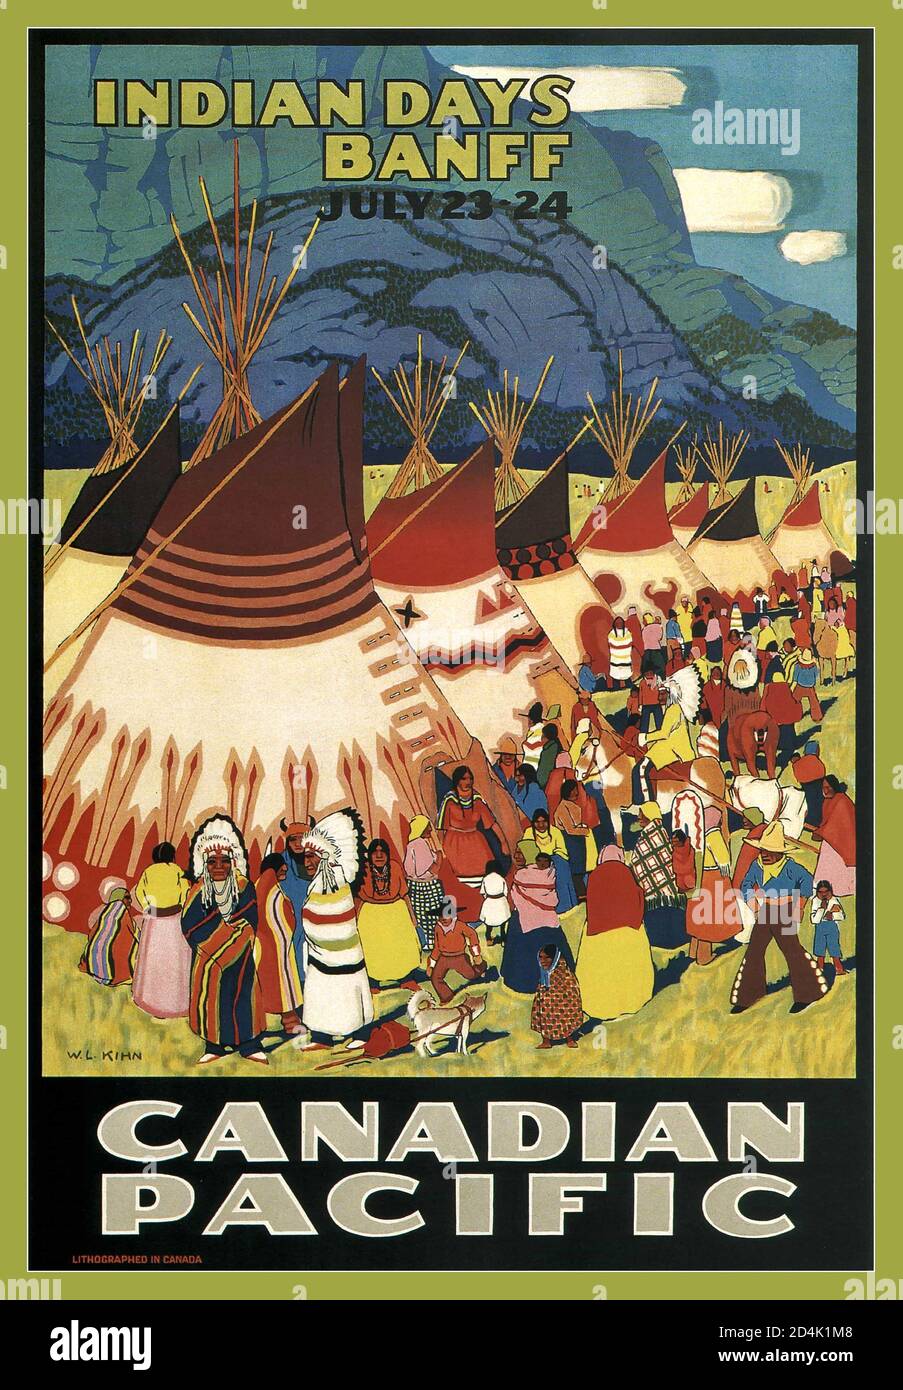 Affiche ancienne du chemin de fer 1925 INDIAN DAYS BANFF W. Langdon Kihn affiche publicitaire du chemin de fer canadien Pacifique publiée en 1925. Banff Alberta Canada Banque D'Images